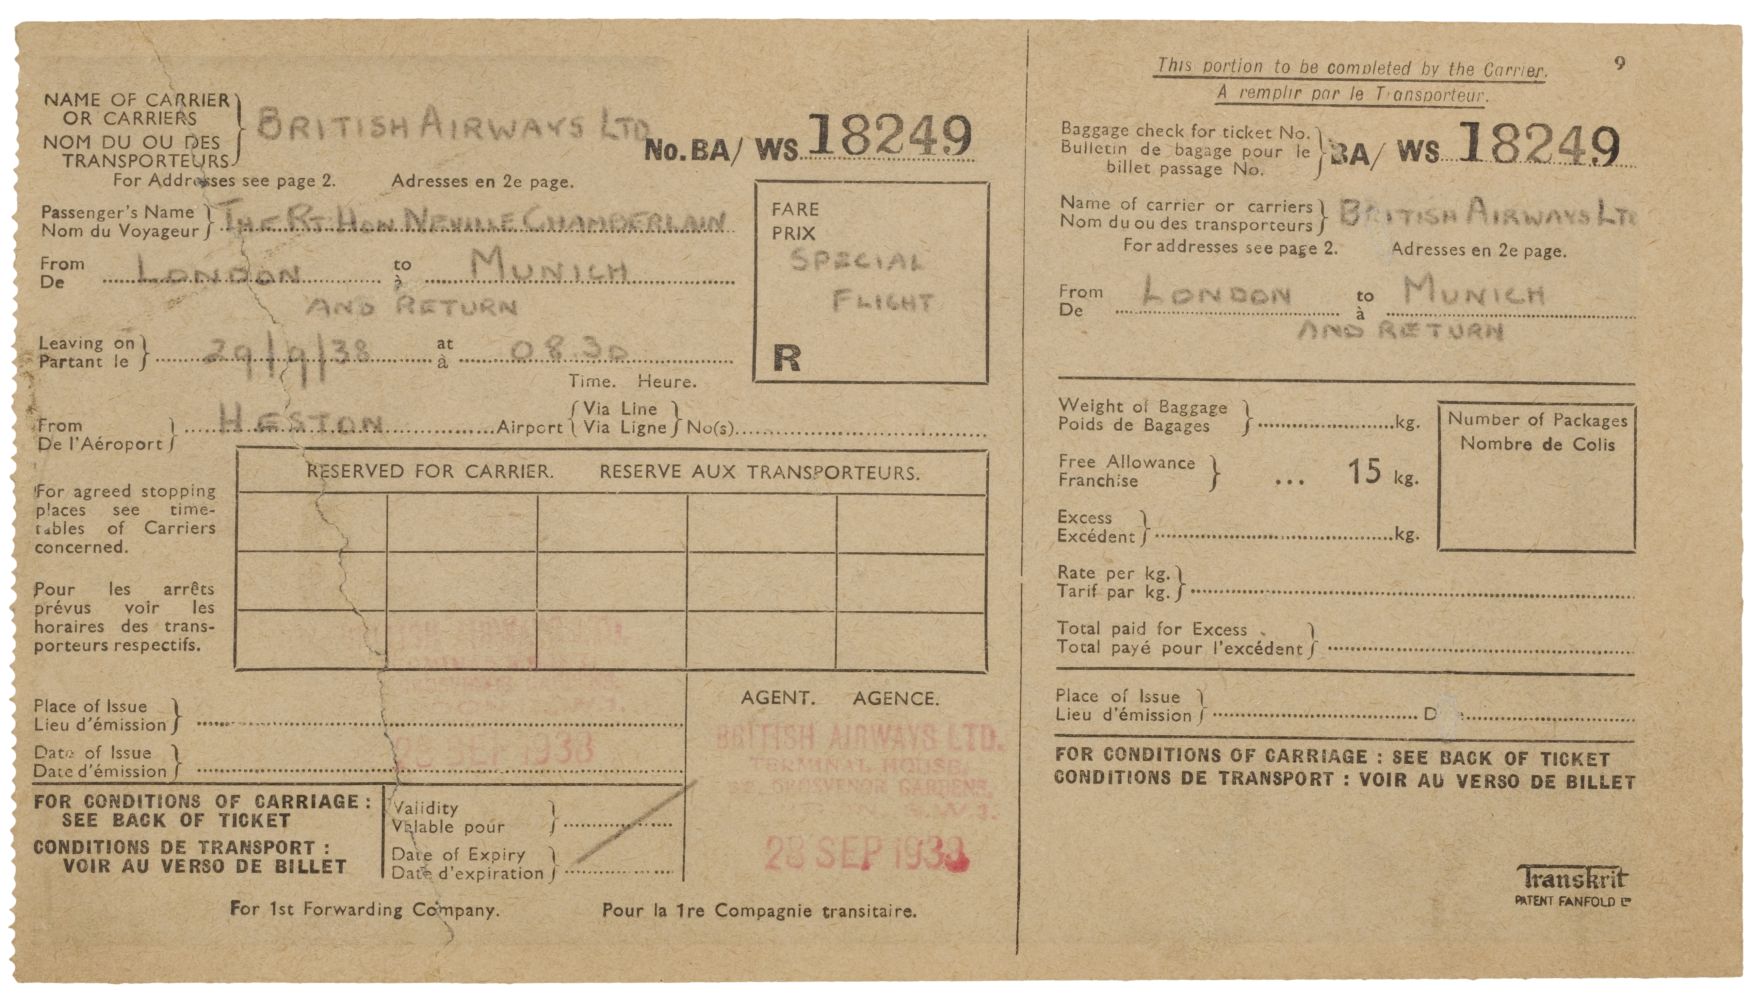 02 Munich Crisis. Neville Chamberlain’s flight ticket, 29 September 1938